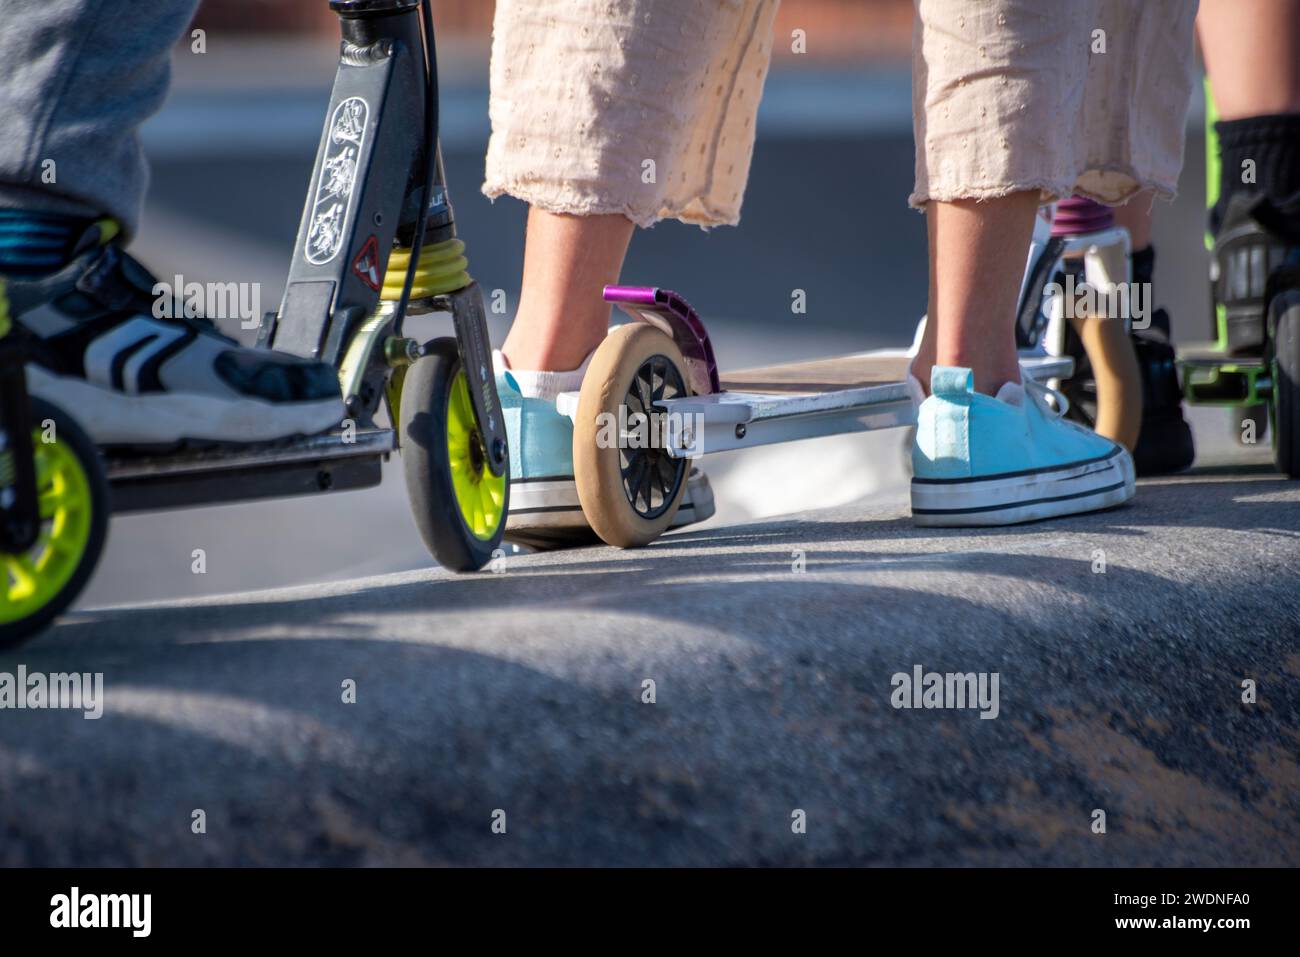 Anticipazione della pista: Piedi e scooter allineati, pronti per un giro dinamico in una coda elettrizzante Foto Stock